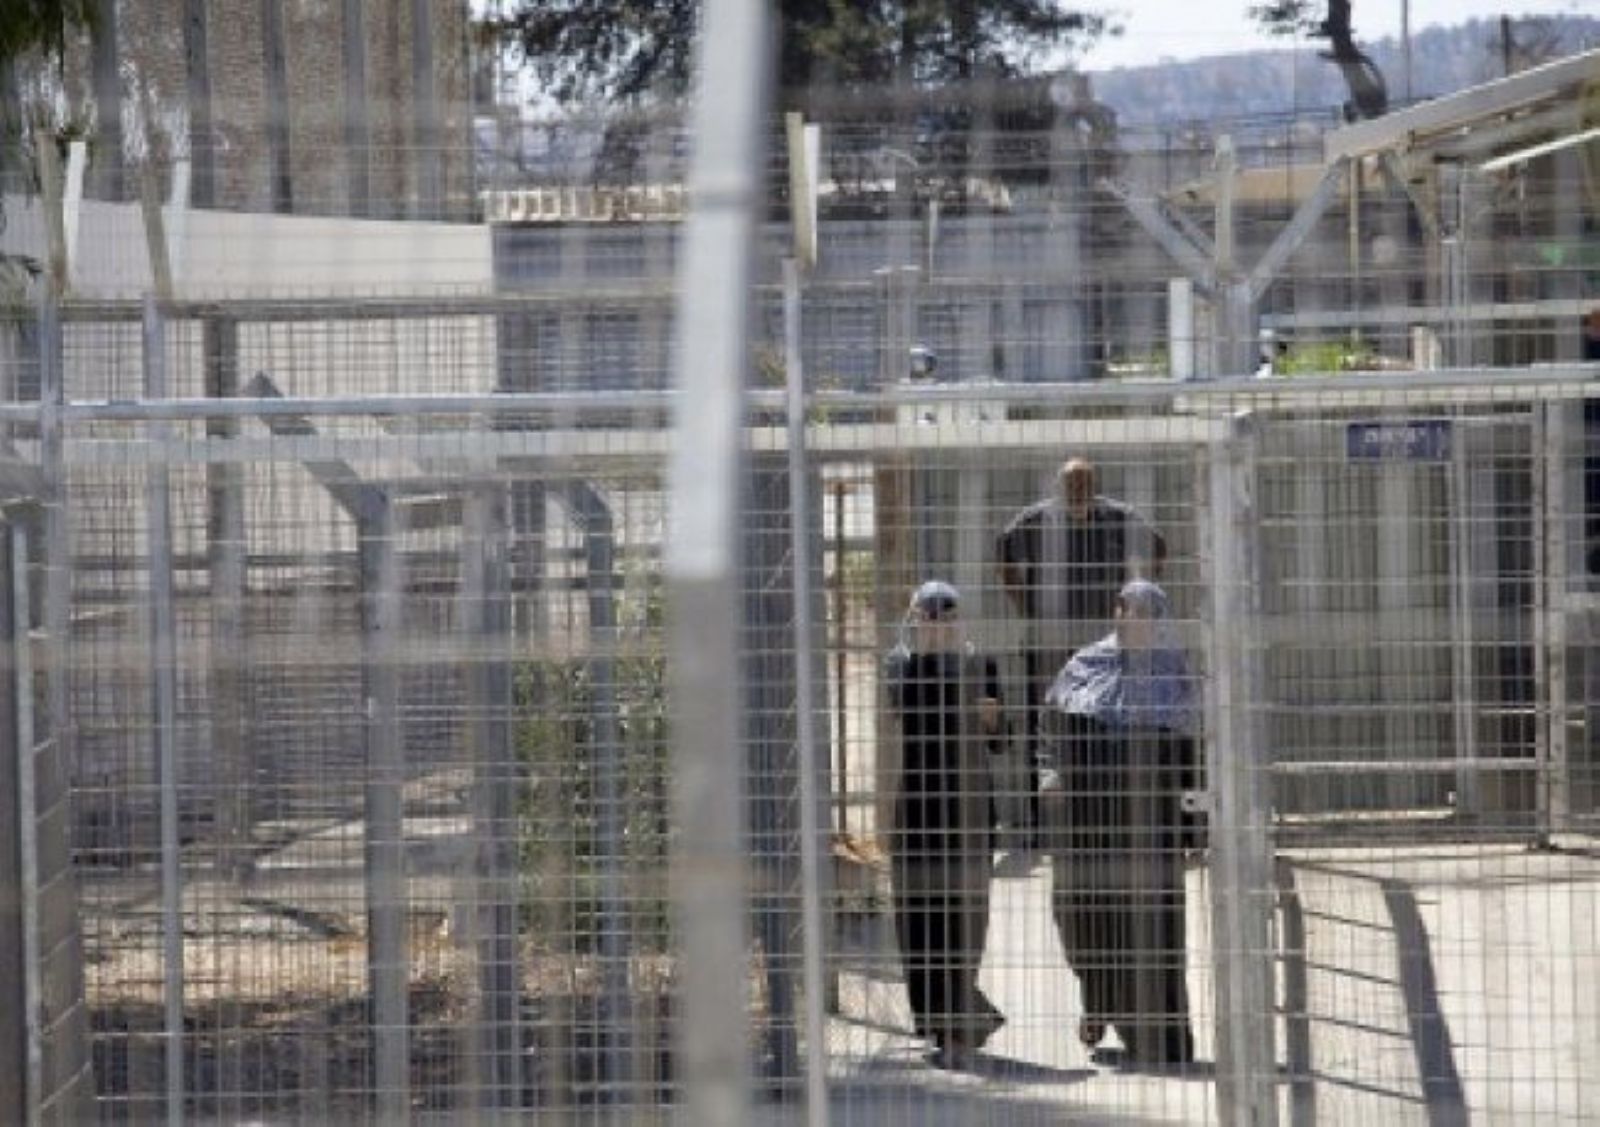 “هيئة الأسرى”: الاحتلال الإسرائيلي يحاول تحقيق سياسة الردع والانتقام من الفلسطينيات عبر الاعتقال